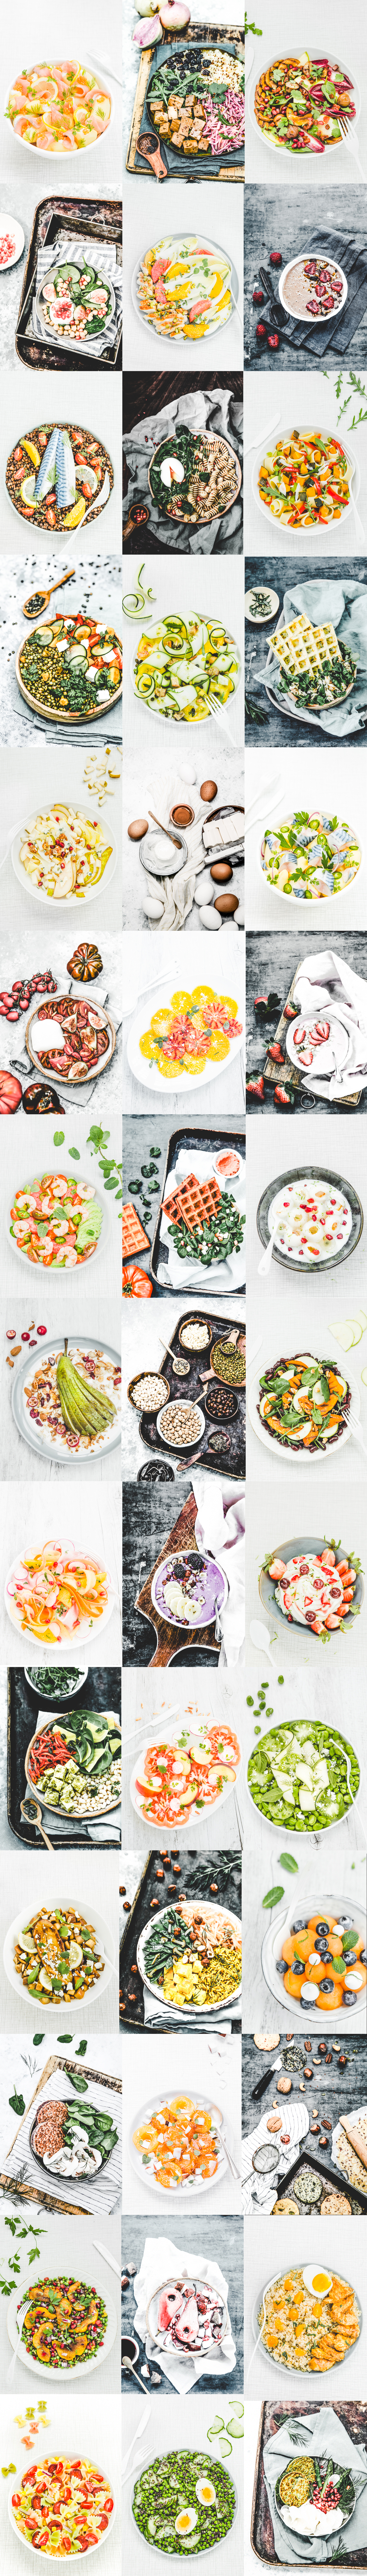 recettes de salades bowls veggies, de la mer, légumineuses, féculents, produits laitiers, sucrés salés, desserts printemps-été-automne-hiver